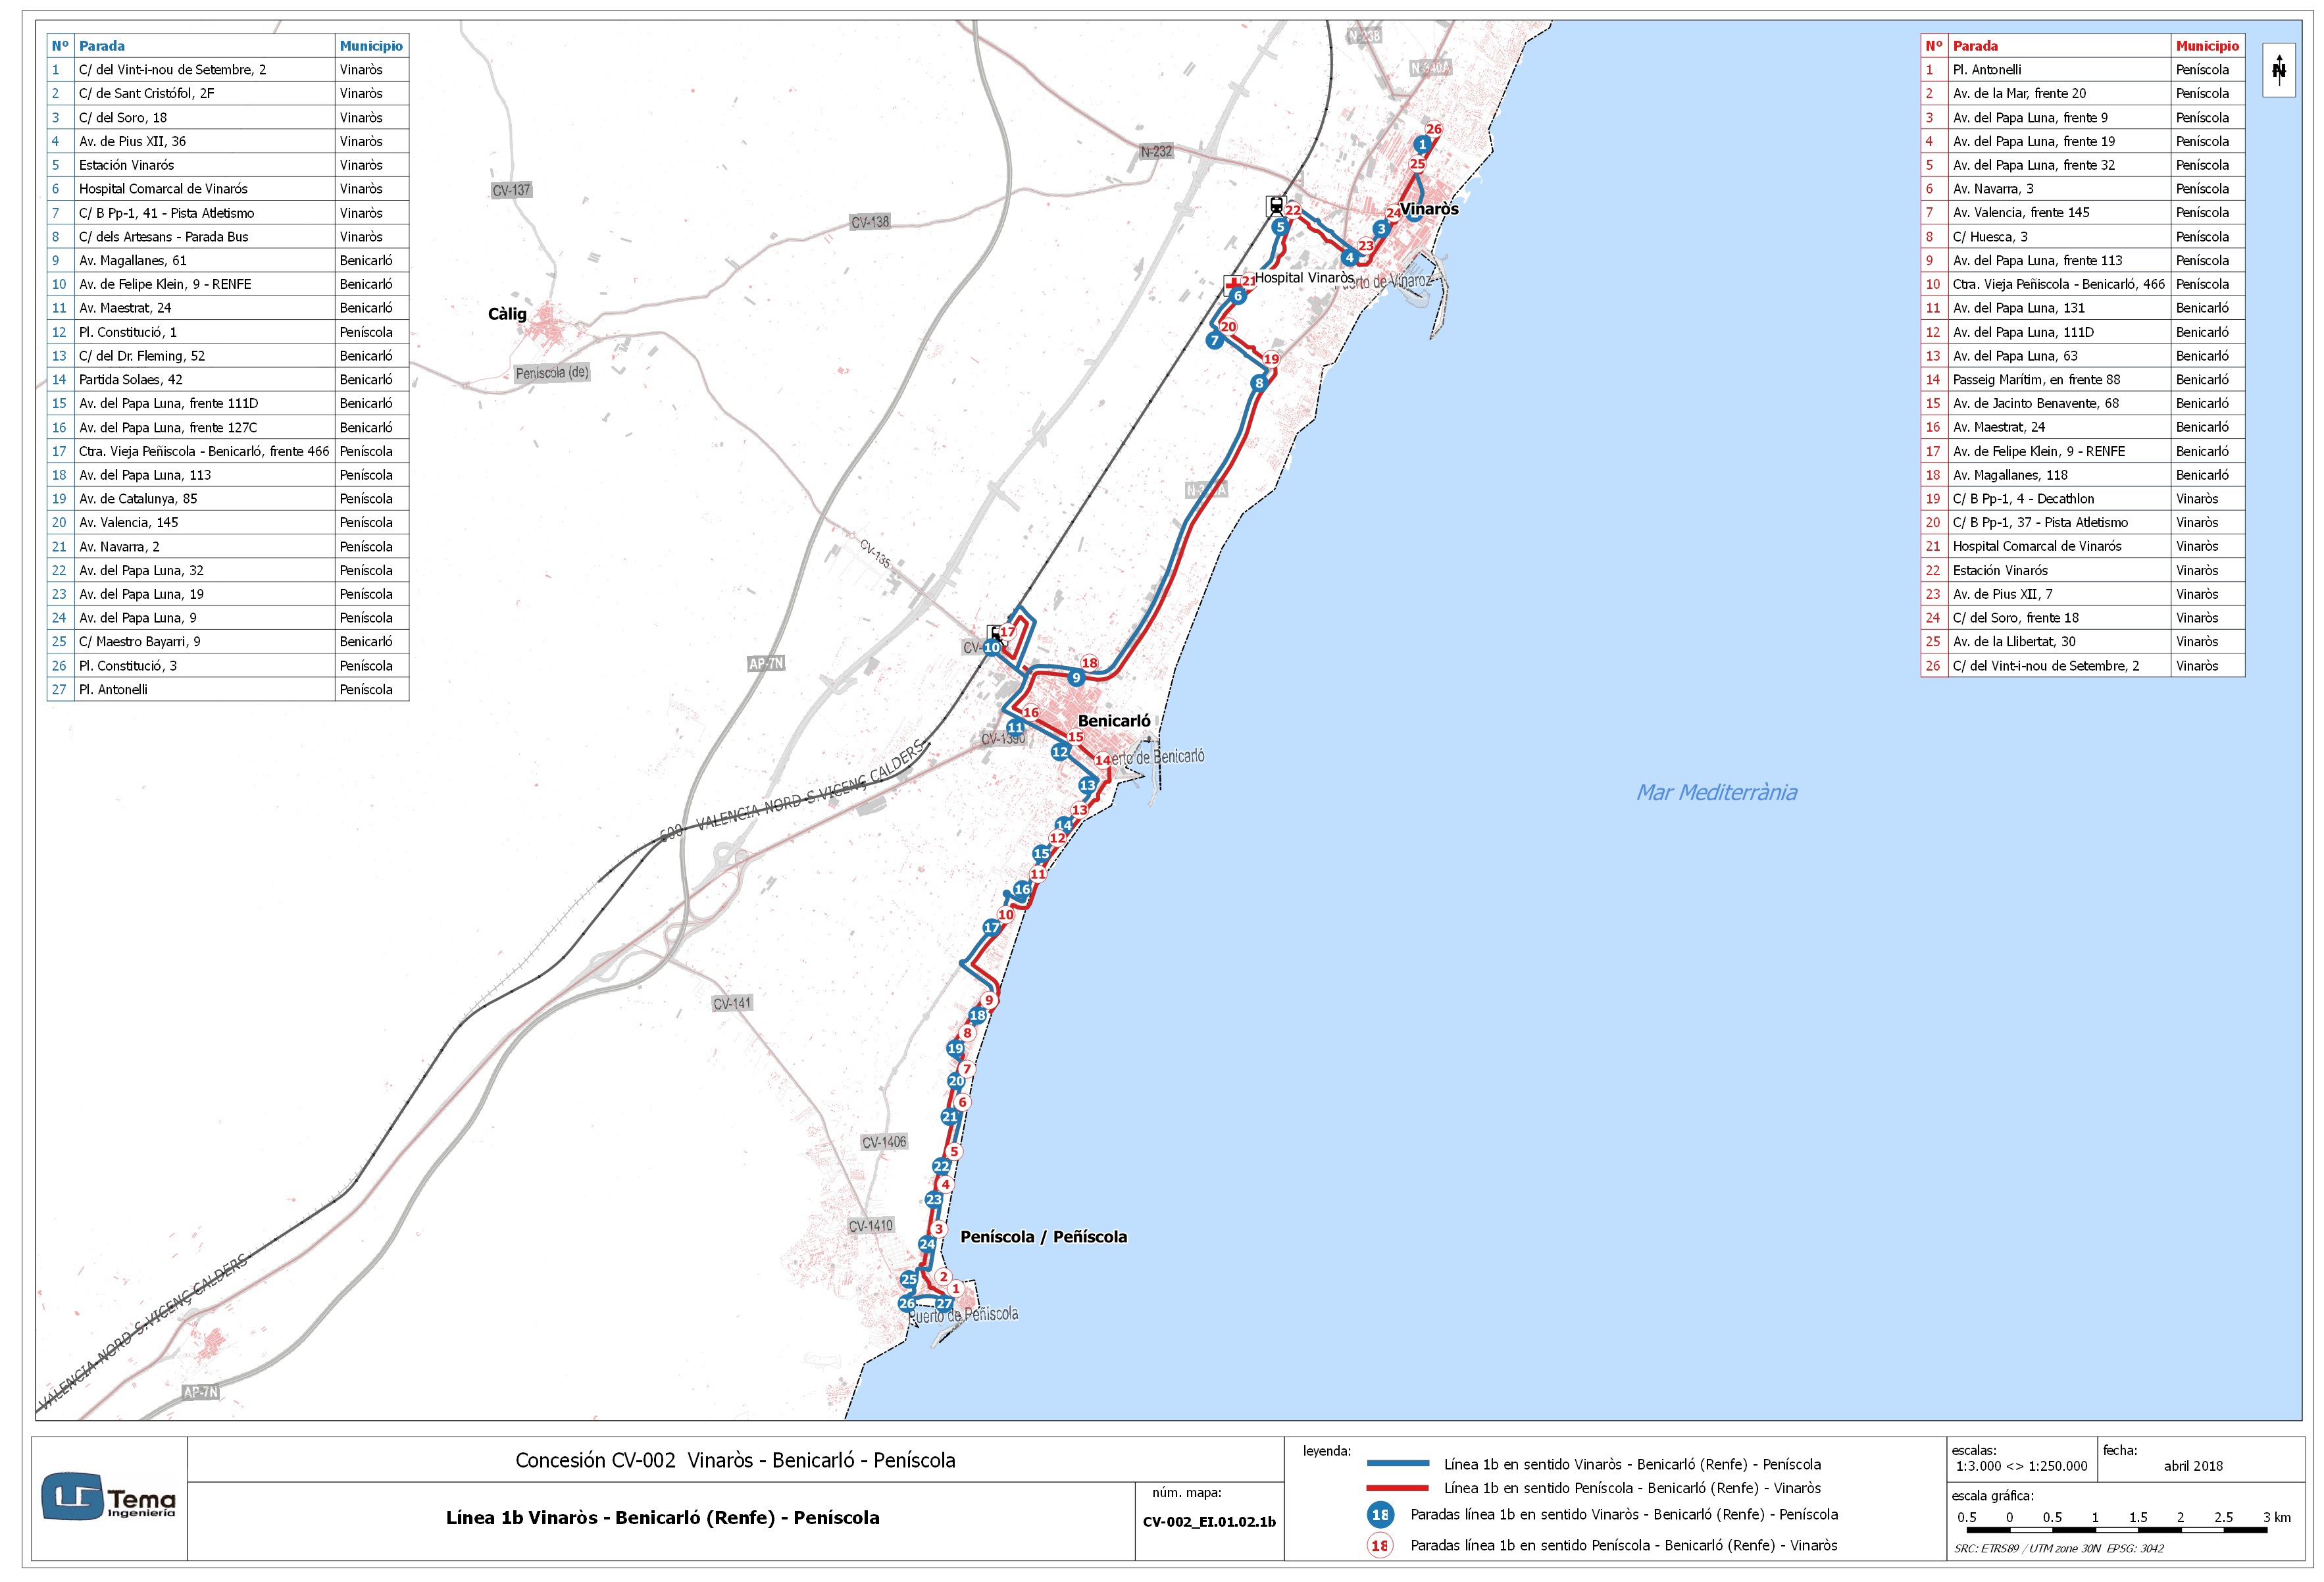 El Consell inicia la licitació del nou mapa de transport públic per autobús Vinaròs-Benicarló-Peníscola